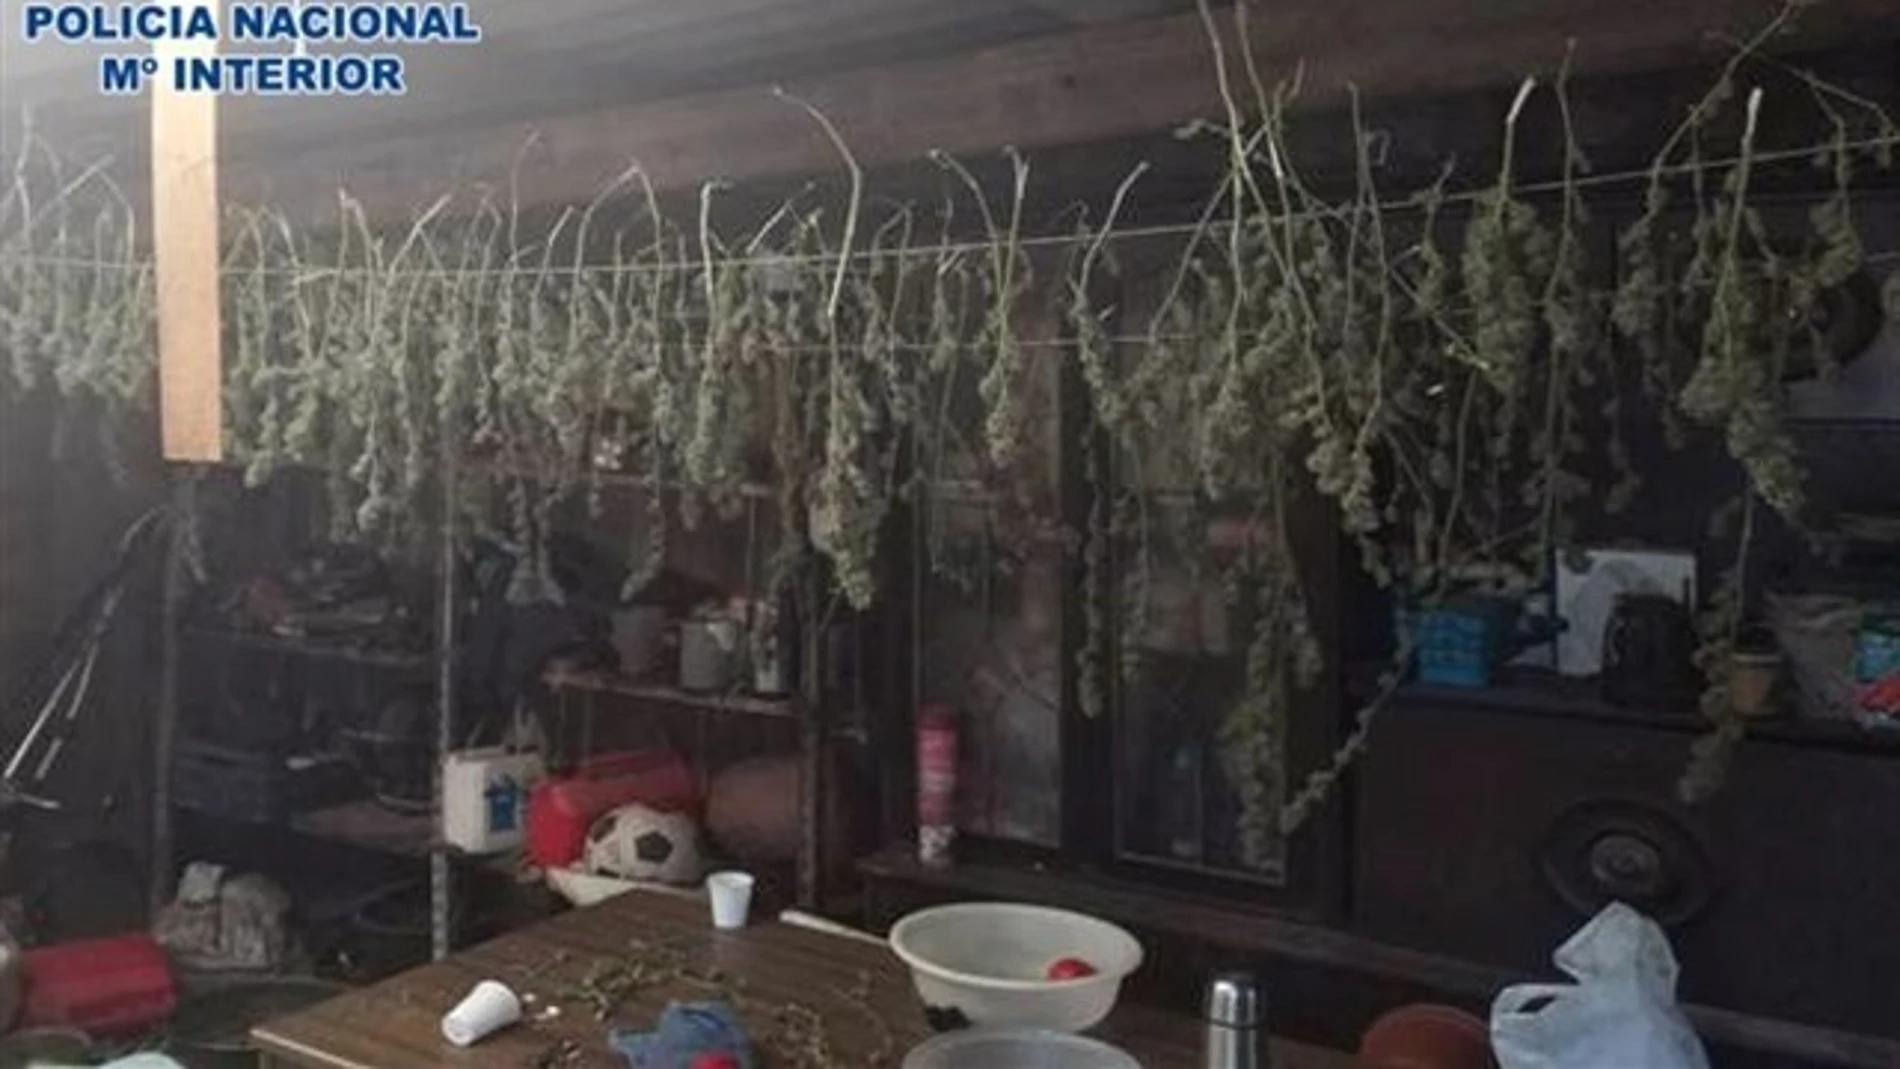 Plantación de marihuana descubierta por la Policía en La Rioja